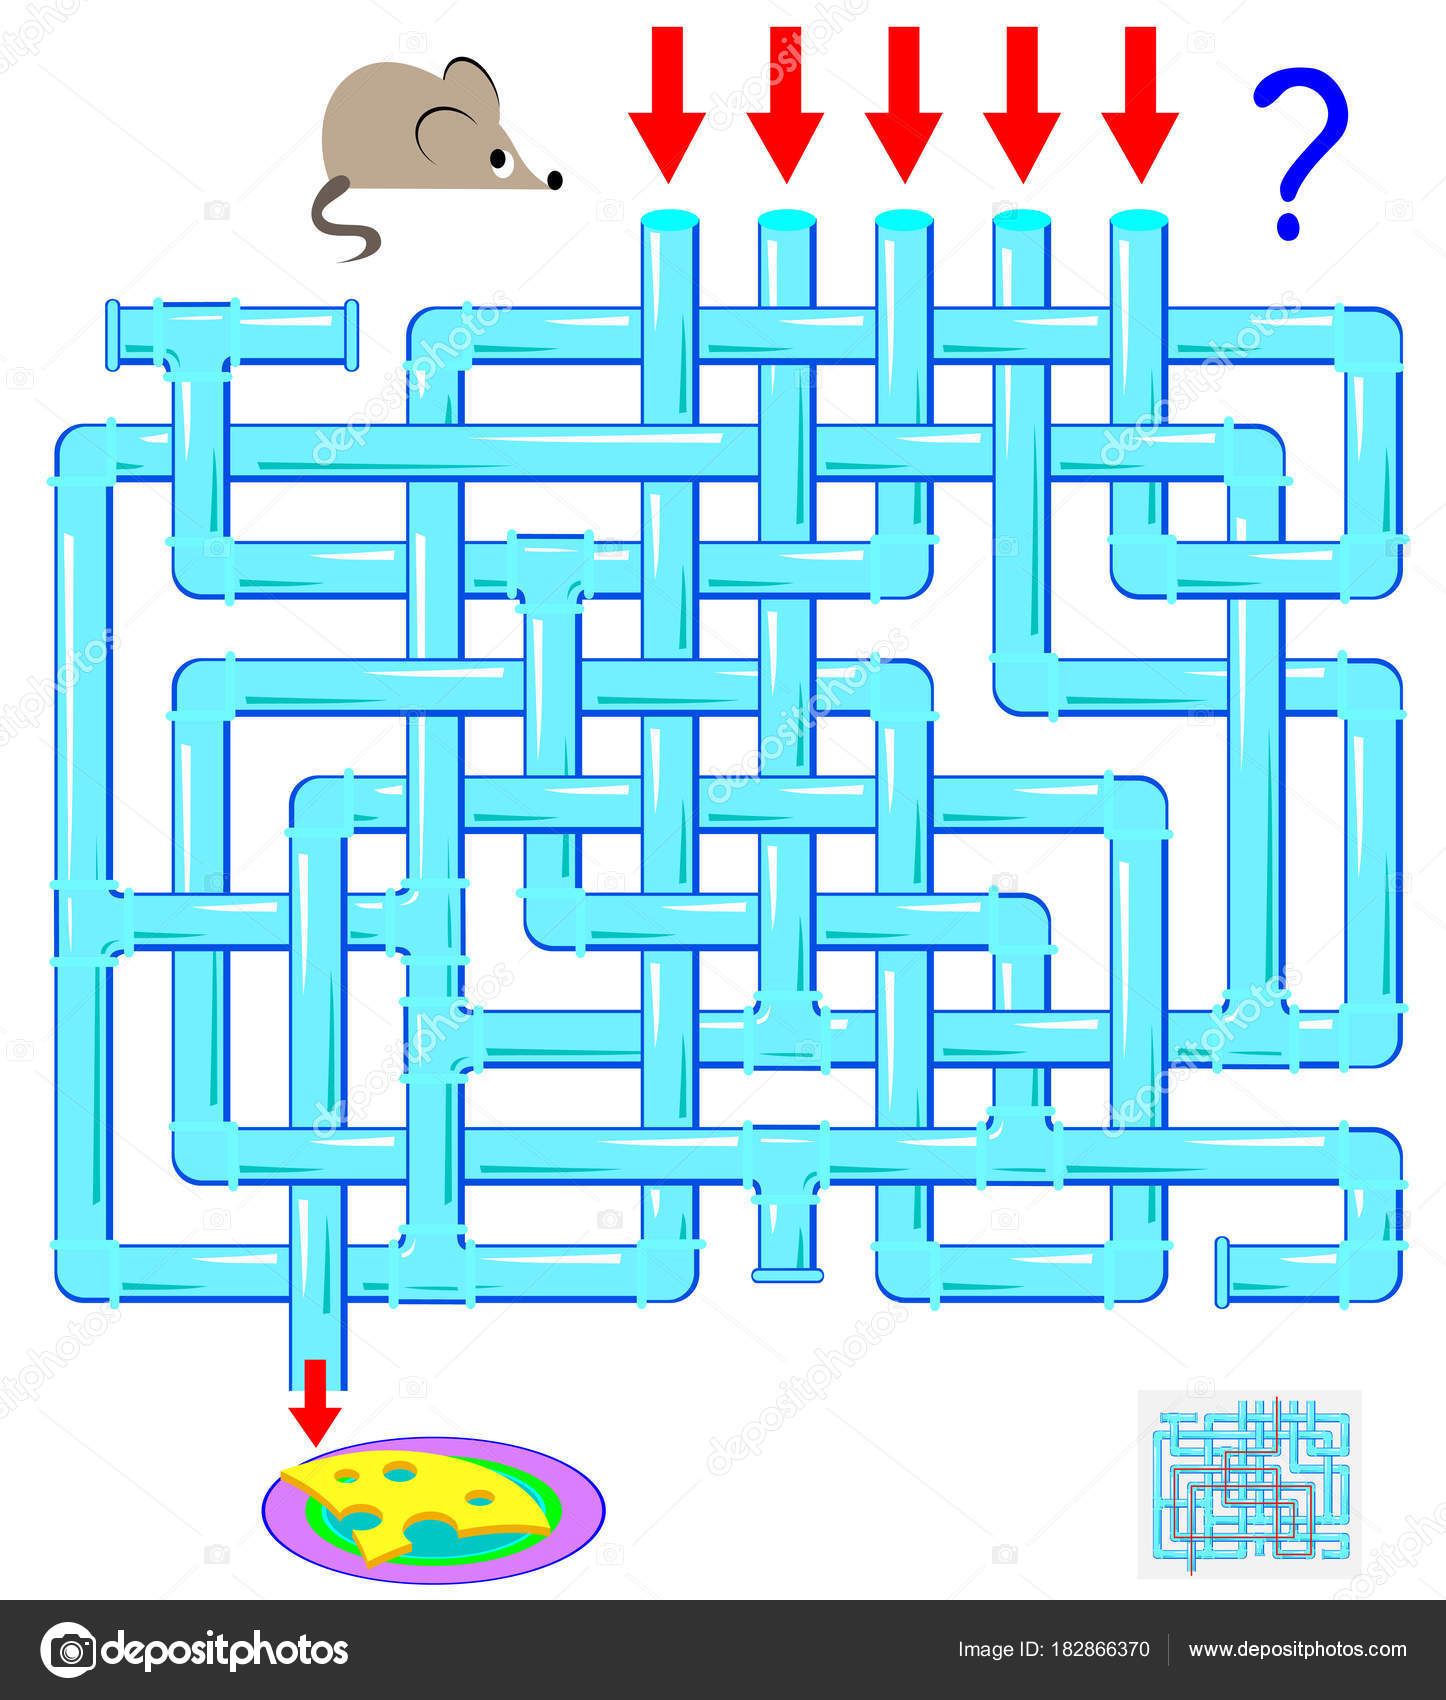 Labirinto De Jogos De Lógica Educacional Para Crianças. Encontrar O Caminho  Certo. Linha Preta De Labirinto Simples Isolada, Em Fu Ilustração Stock -  Ilustração de isolado, fundo: 215509839